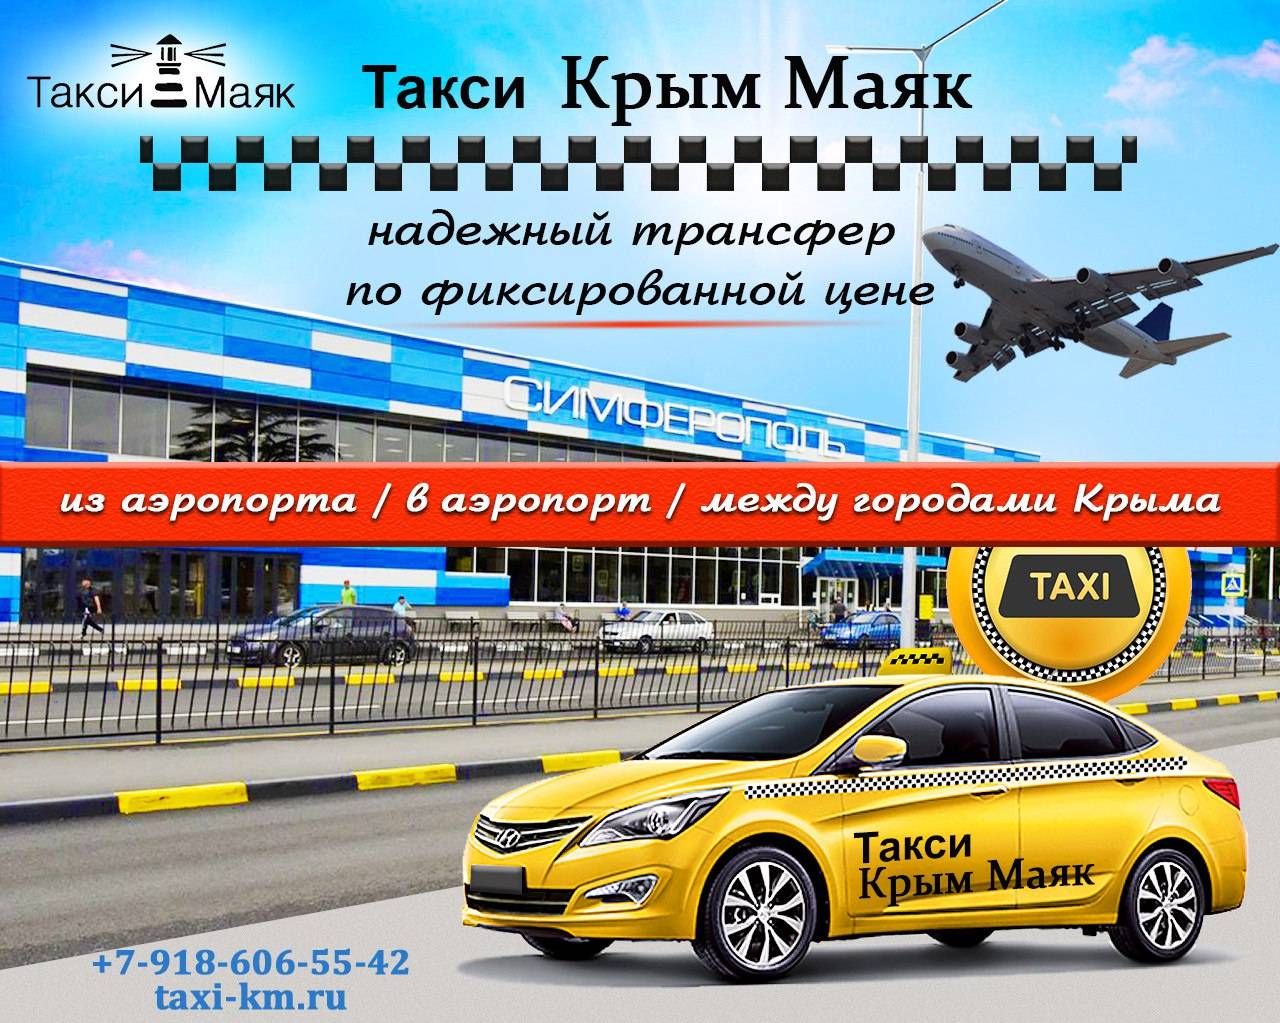 Такси симферополь — телефон, отзывы, рейтинги, офисы, работа